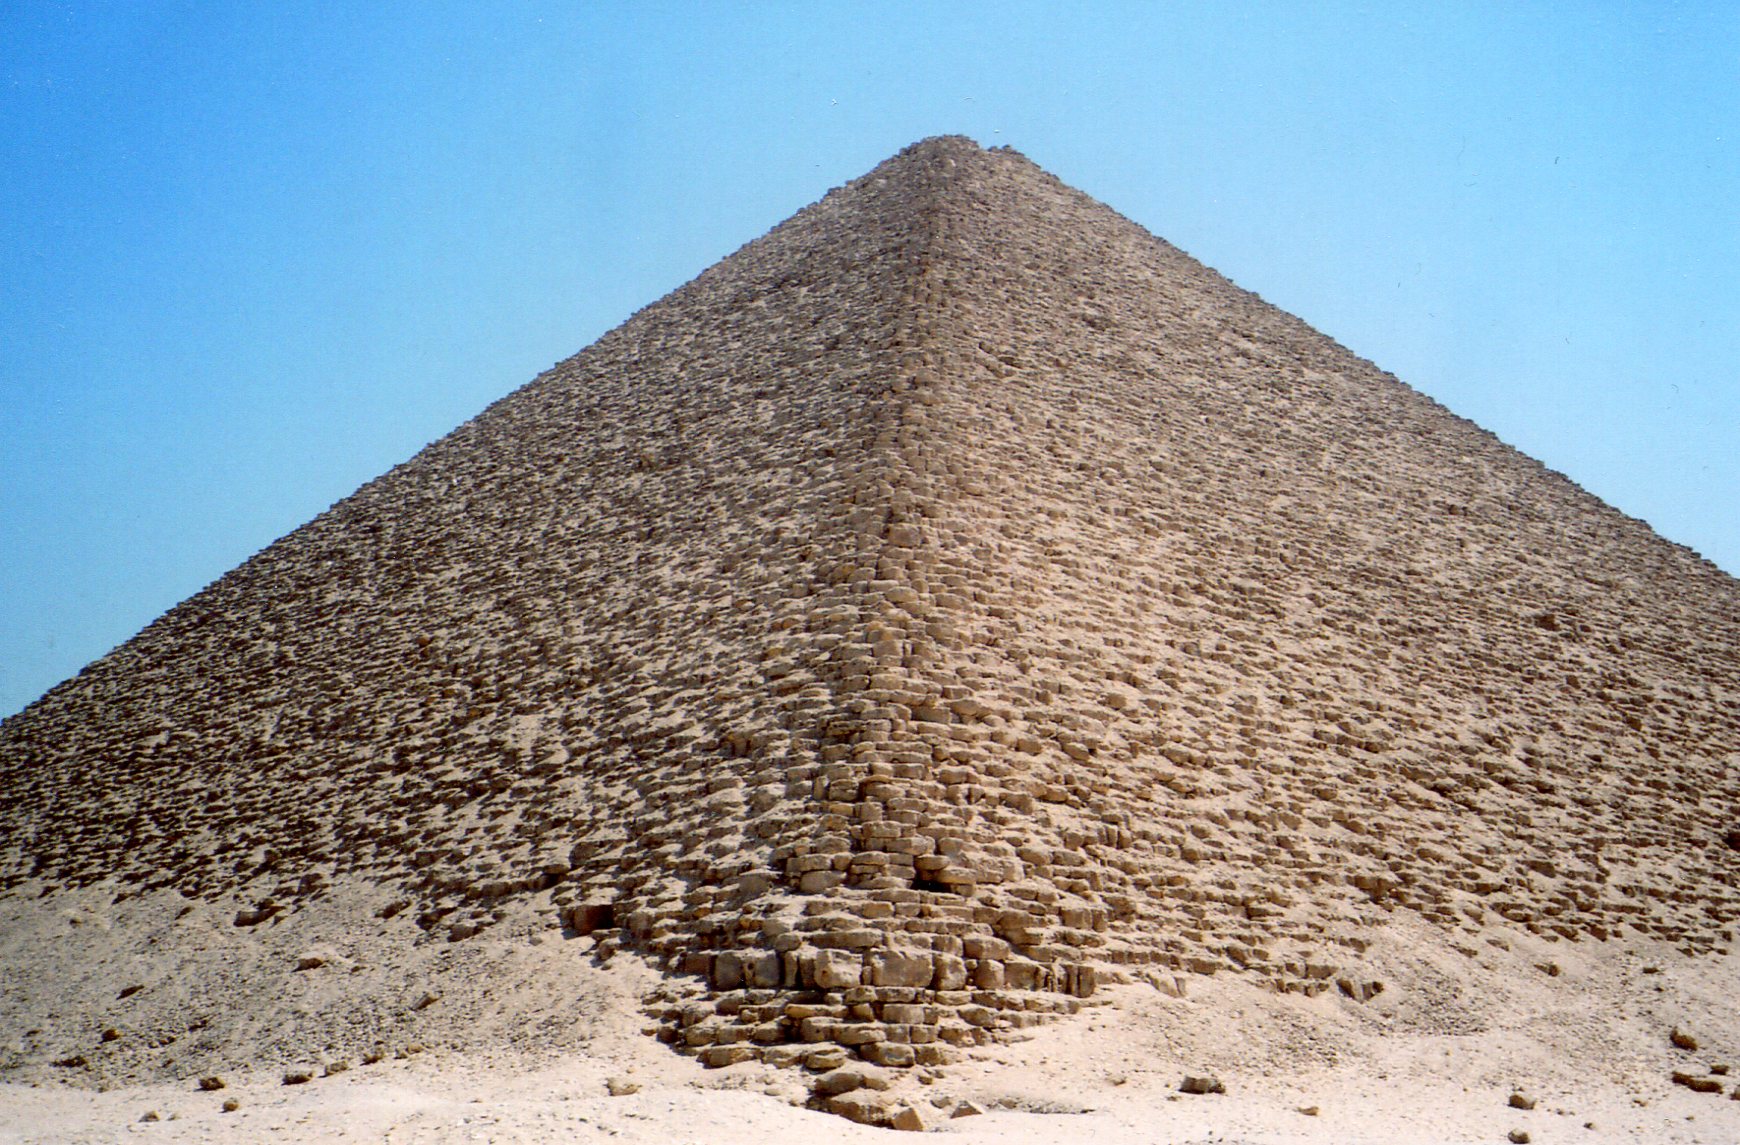 Пирамида снофру имеет 220 104 11